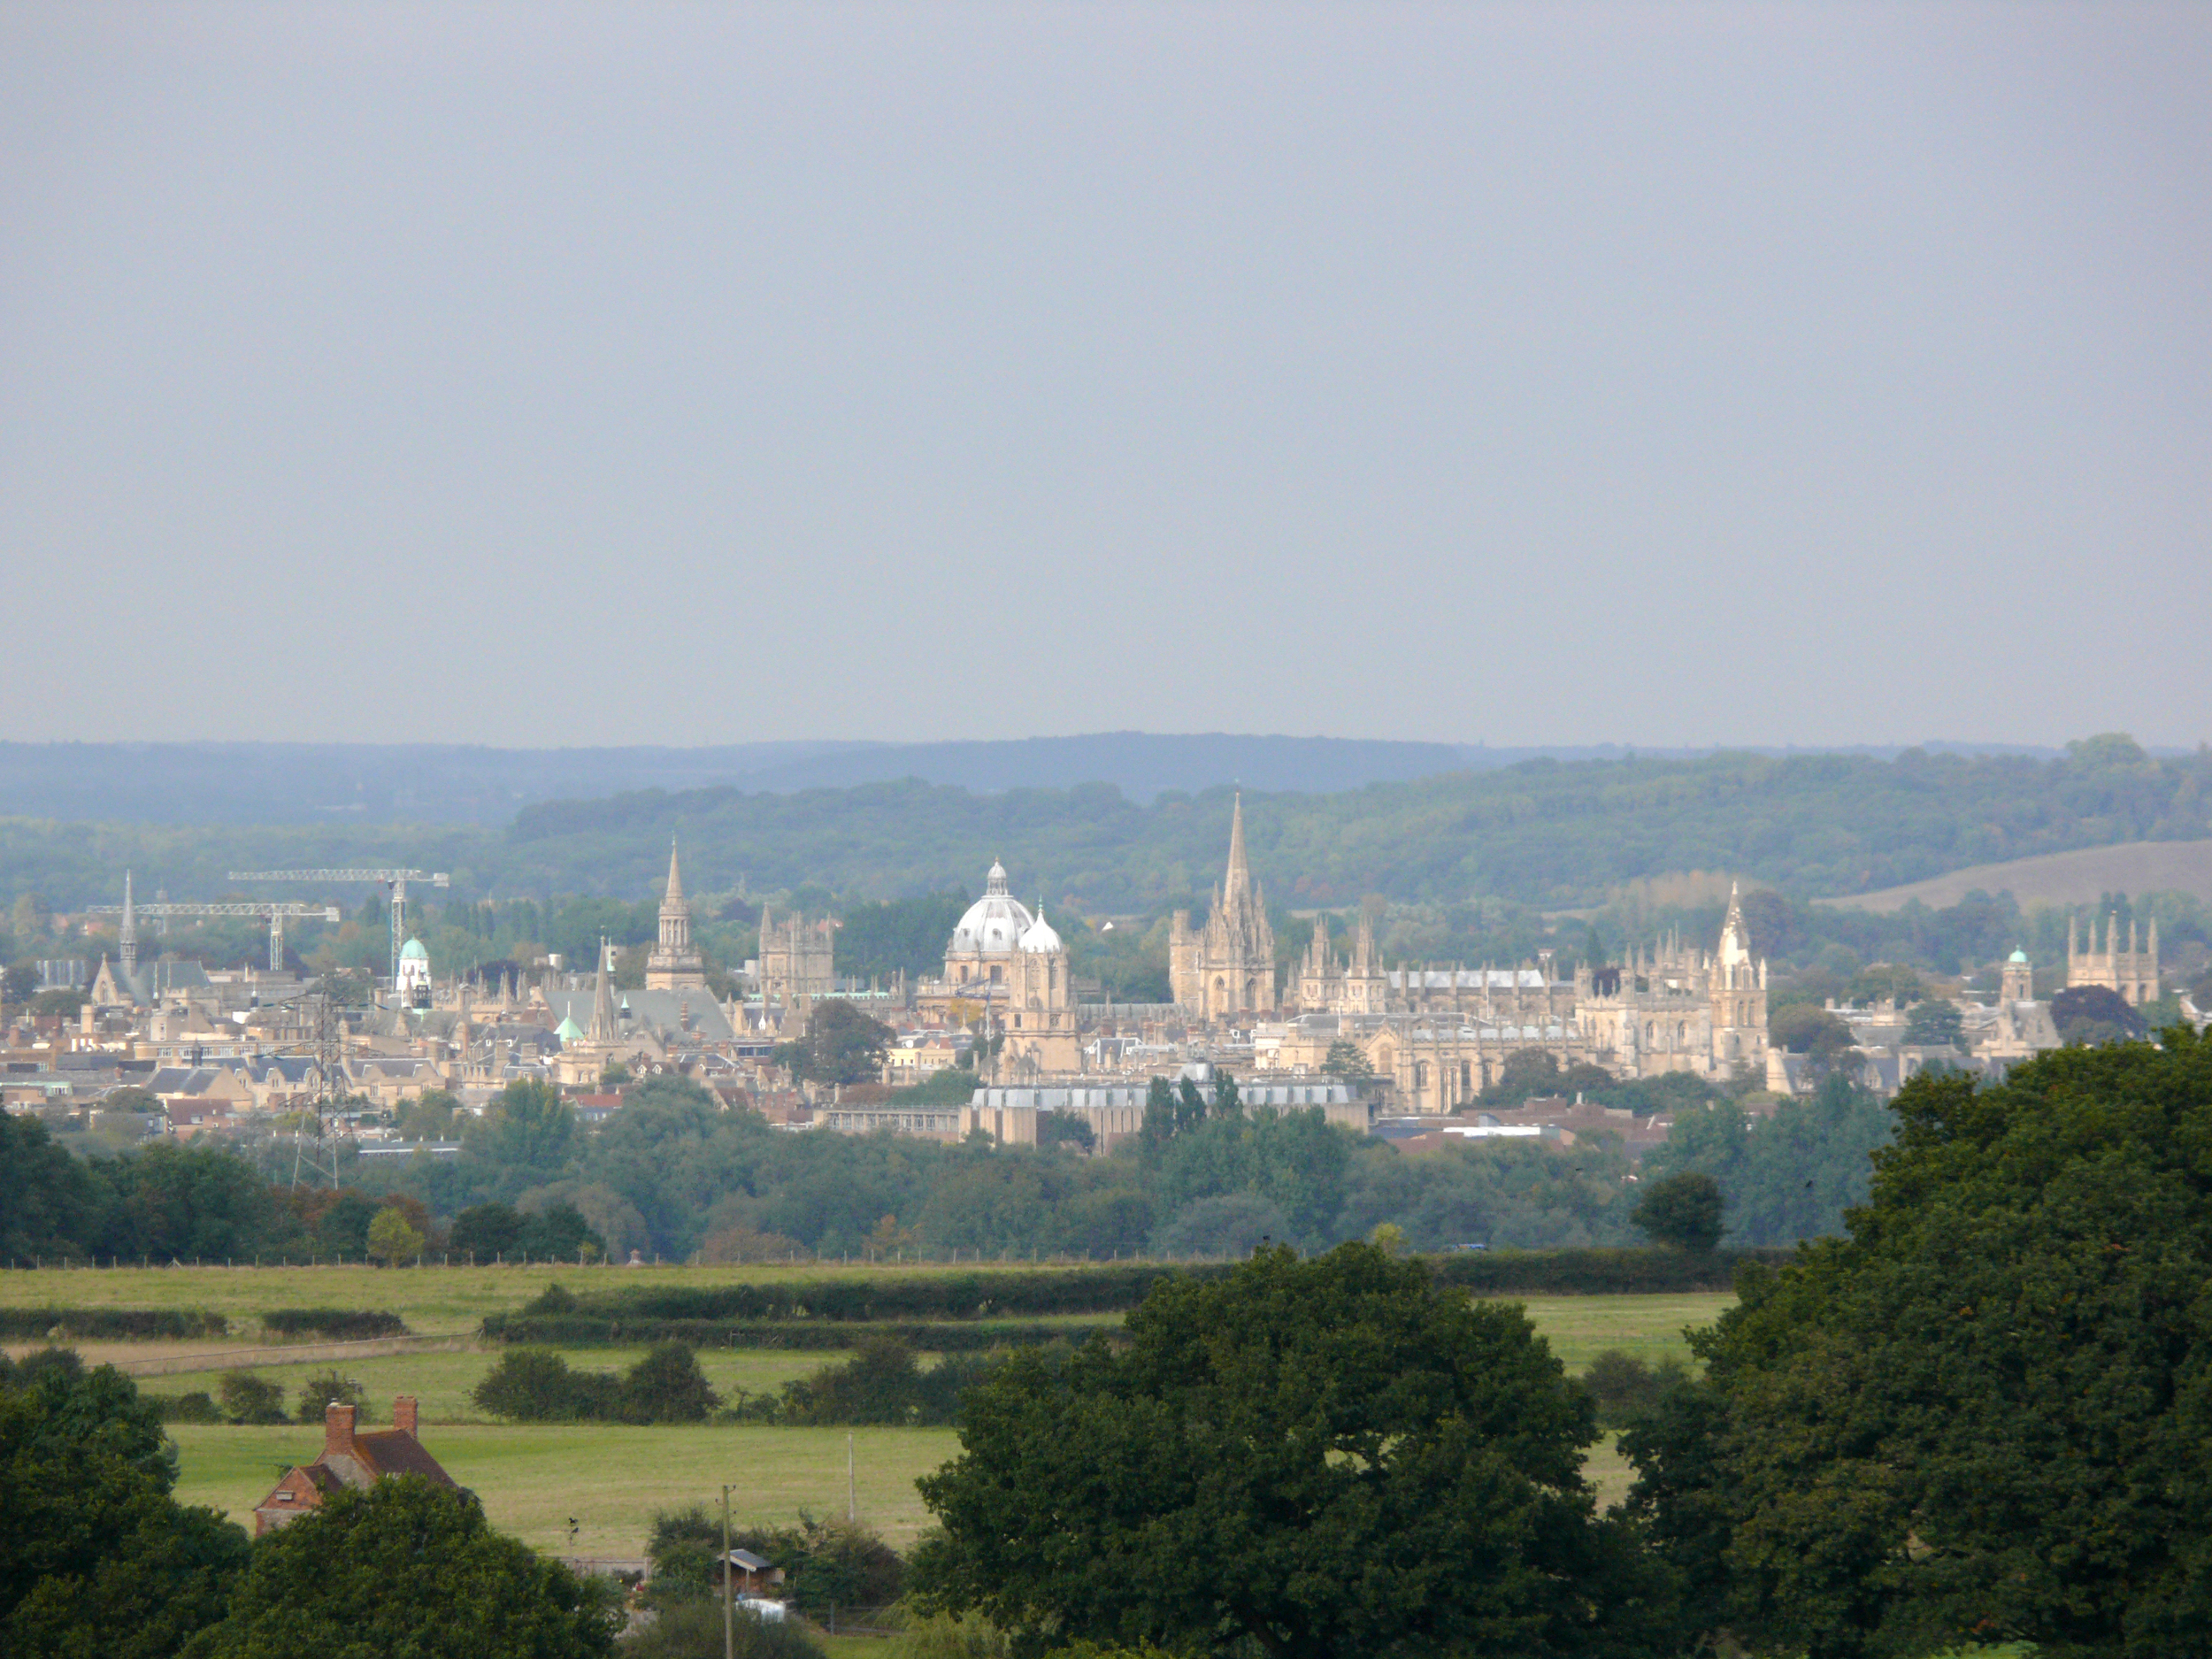 Historic Oxford